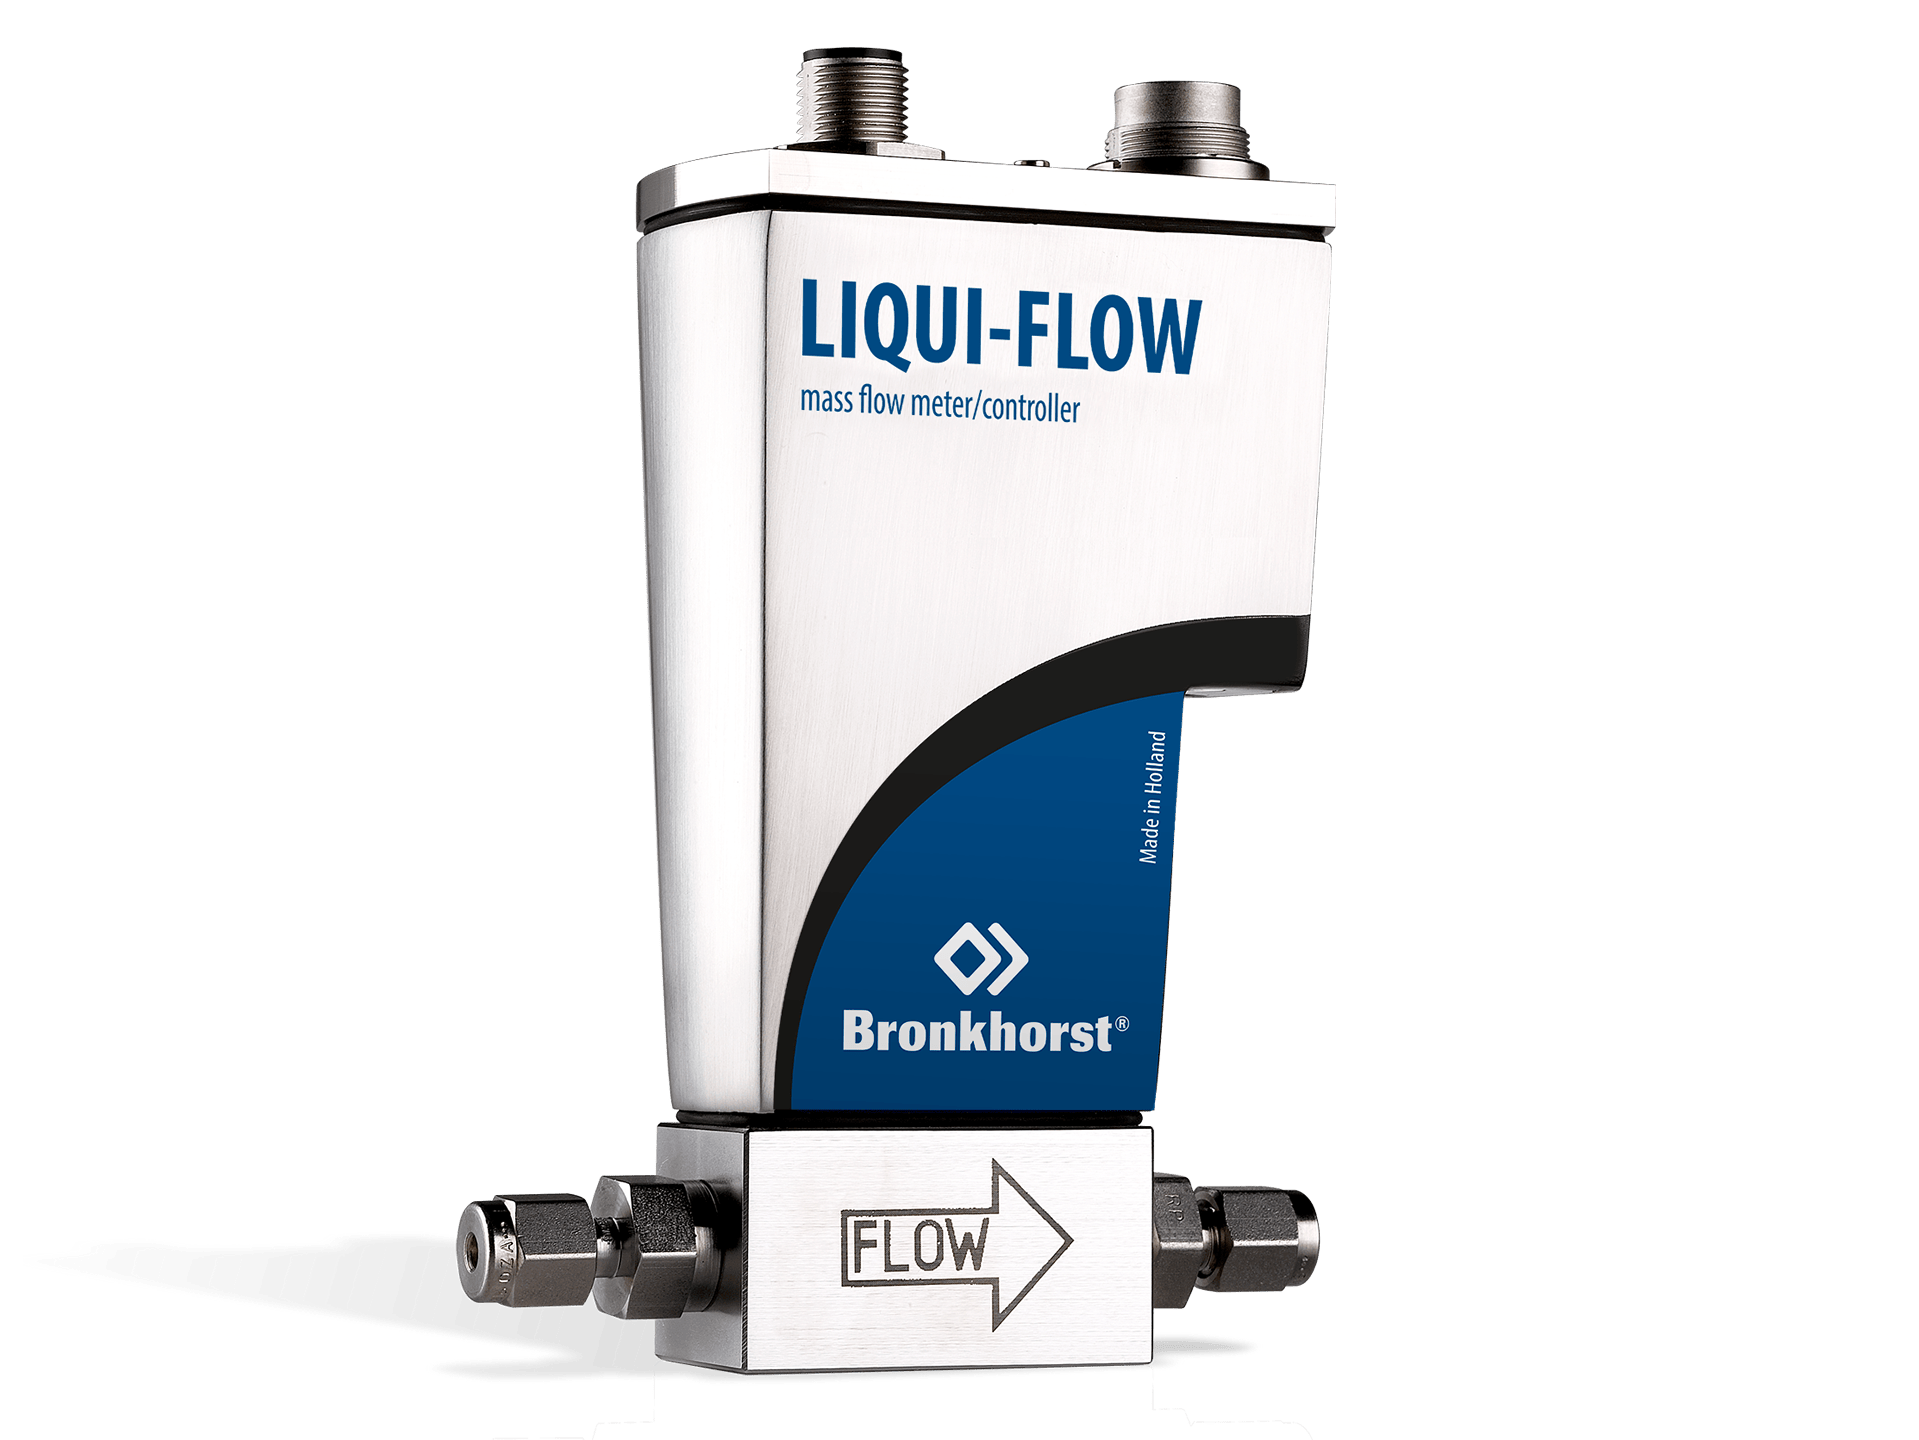 Liqui-flow måler eller kontroller med tilkobling for tubing og elektronikk.